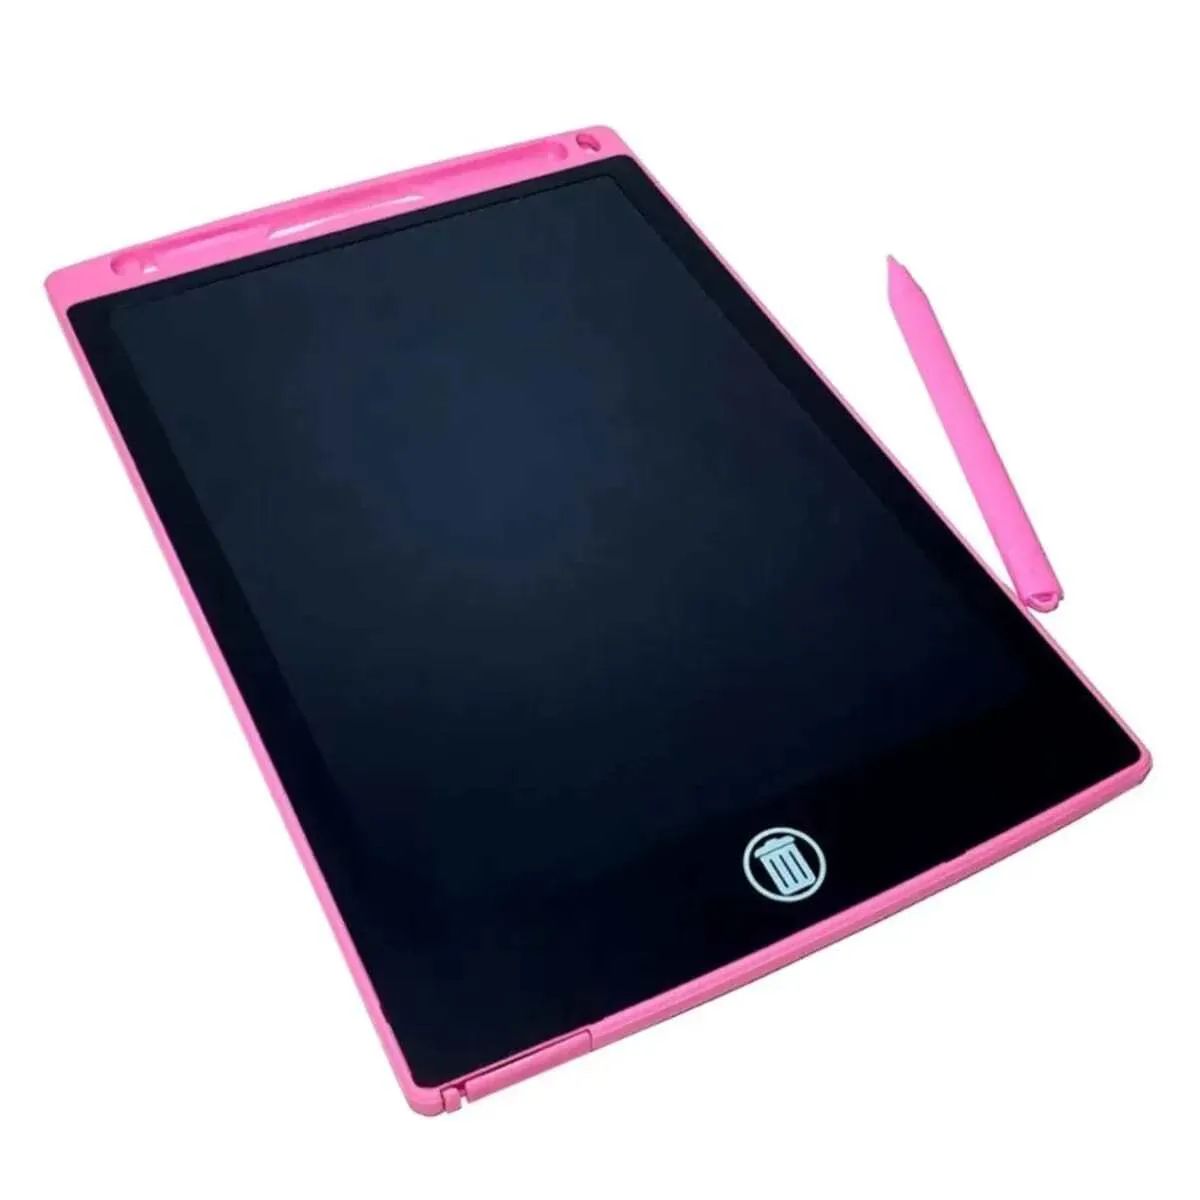 Графический планшет 8.5 LCD Writing Tablet Pink 00658 графический планшет 8 5 lcd writing tablet black 006555